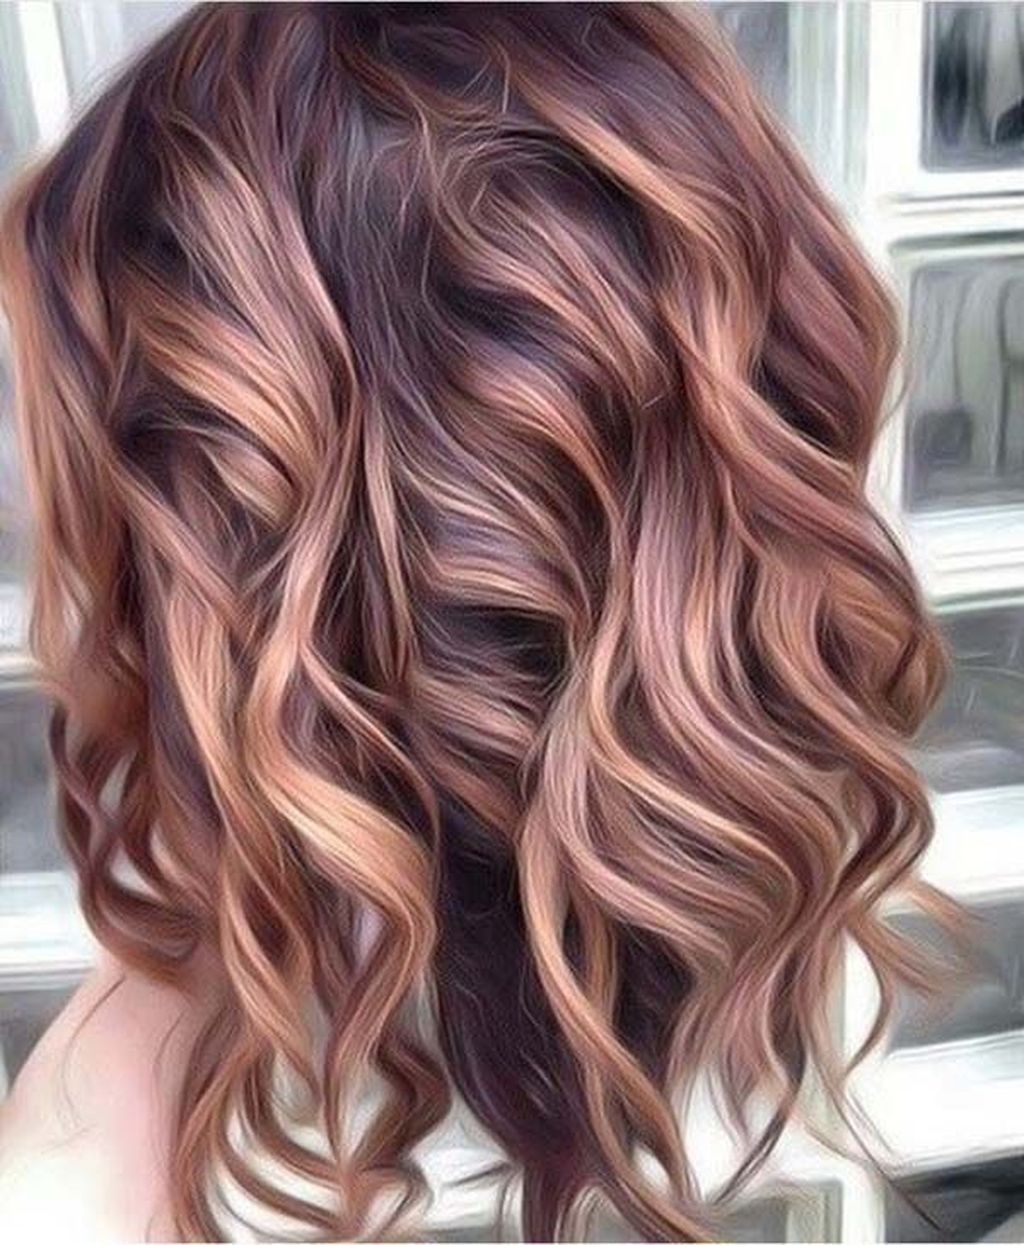 36 Perfect Fall Hair Colors Ideas For Women -   17 fall hair ideas